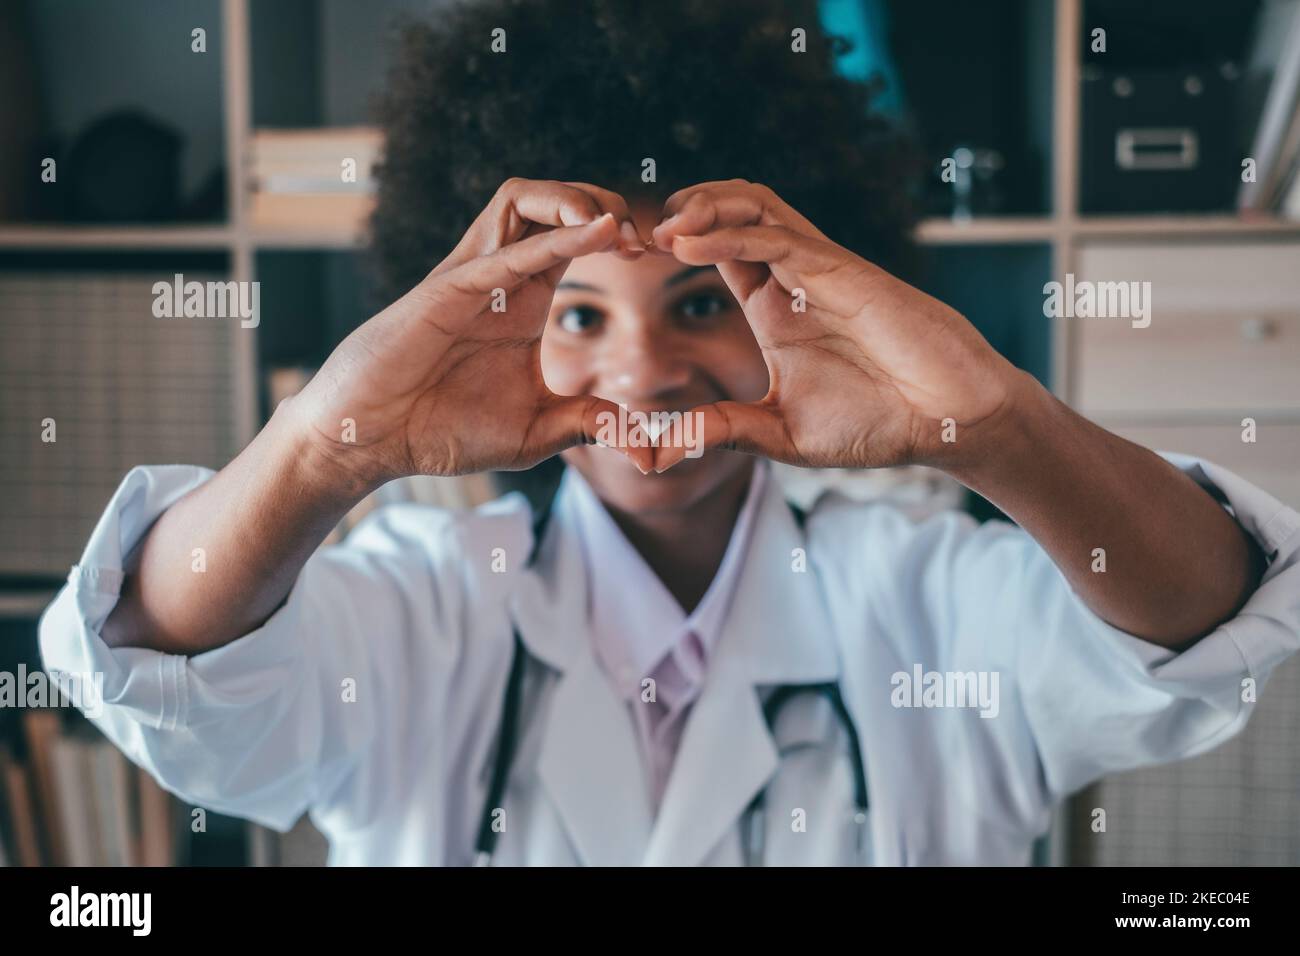 Frau tut Herzform Geste mit den Händen. Lächelnde schwarze Ärztin, die mit ihren Händen ein Liebessymbol macht. Mitarbeiter im Gesundheitswesen, der den Patienten Liebe und Unterstützung gibt Stockfoto